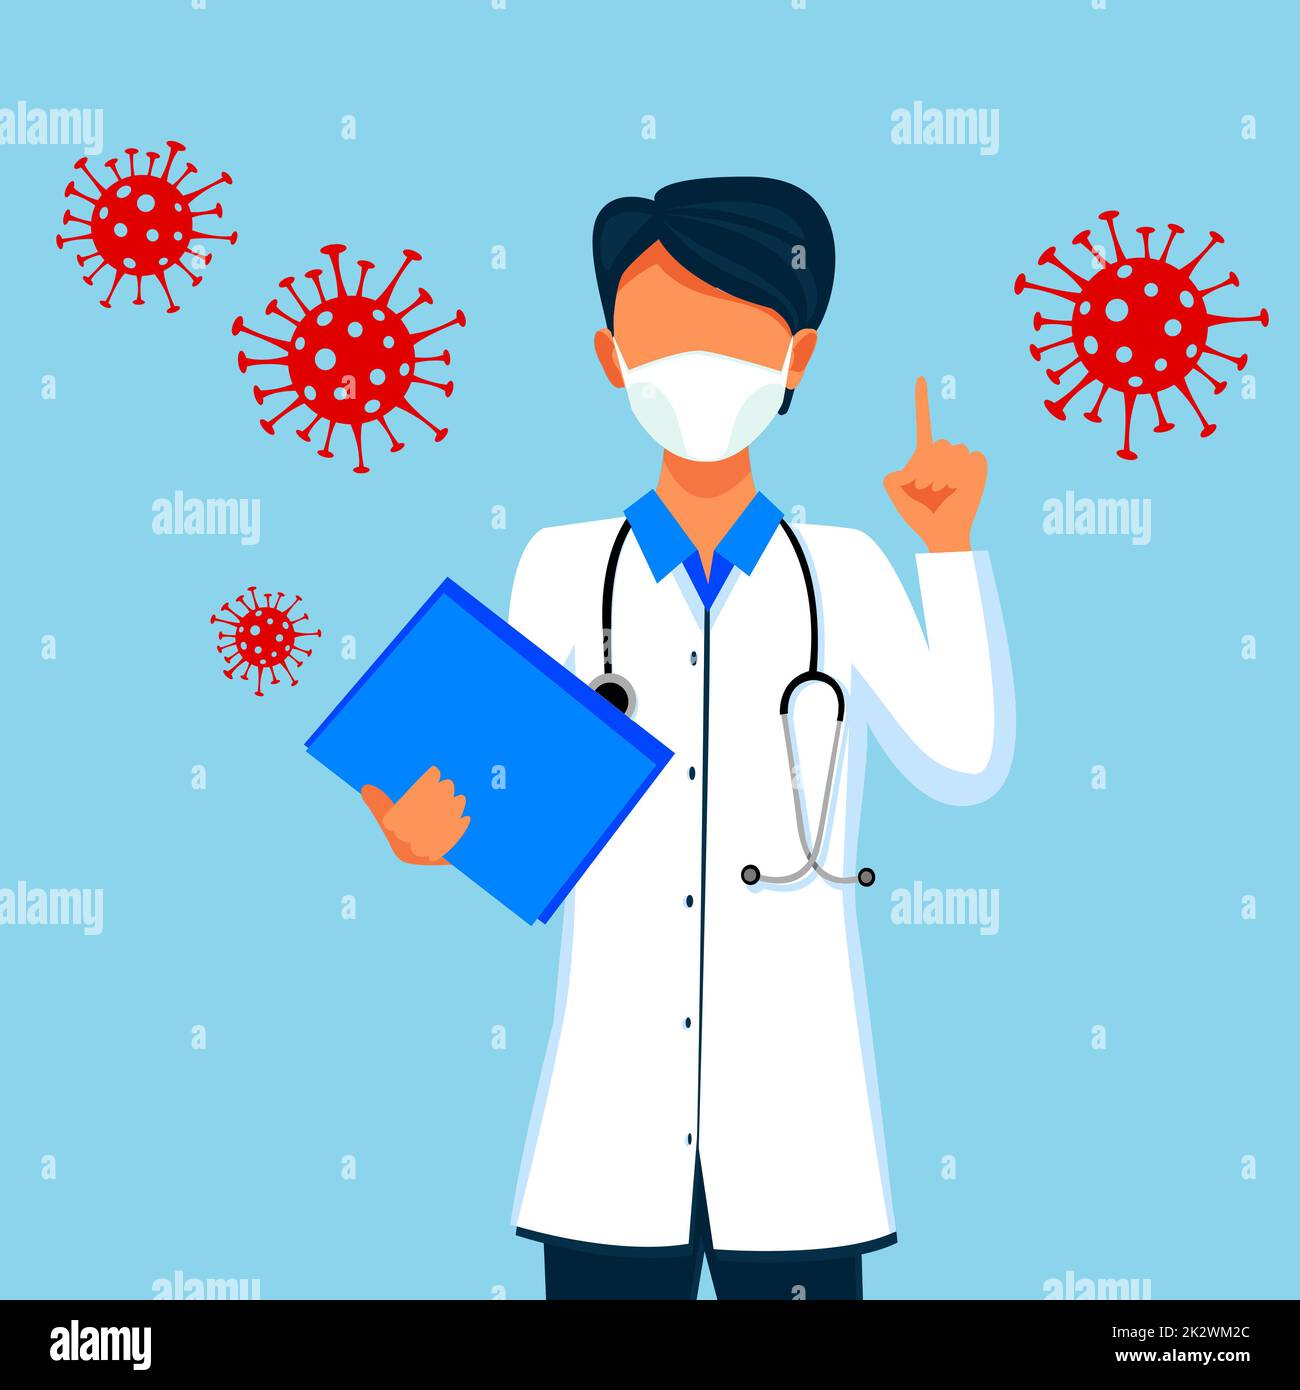 Virus corona dangereux. Concept de risque pandémique. Illustration 3D Banque D'Images